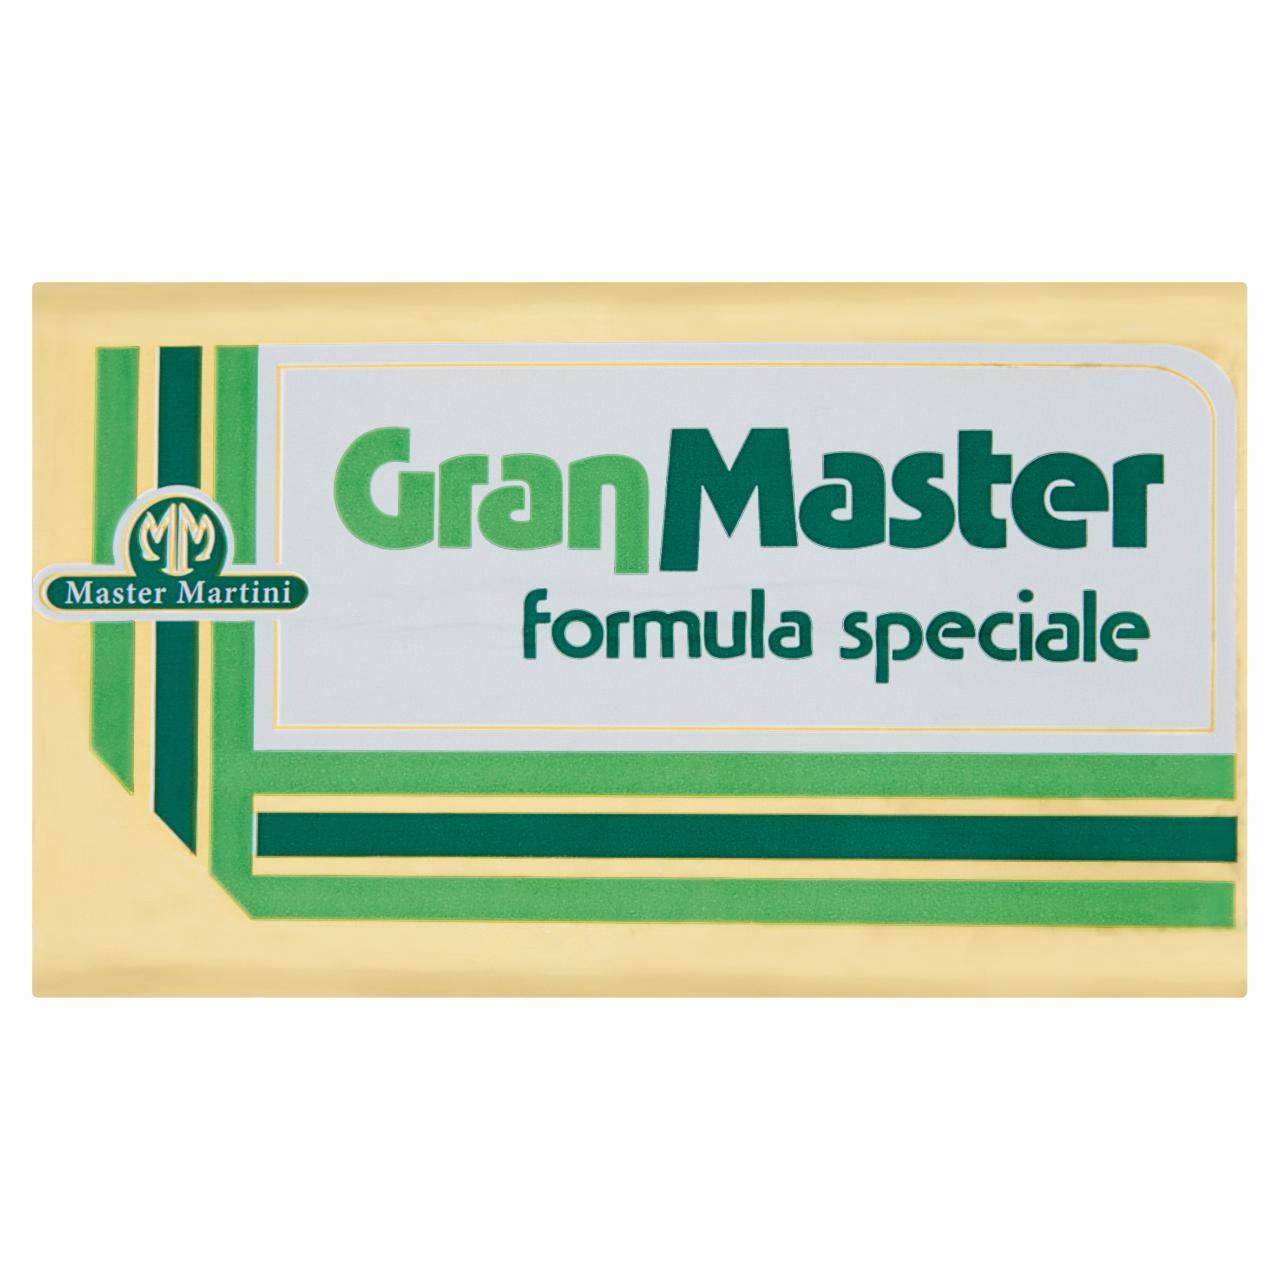 Képek - Master Martini GranMaster margarin 1 kg